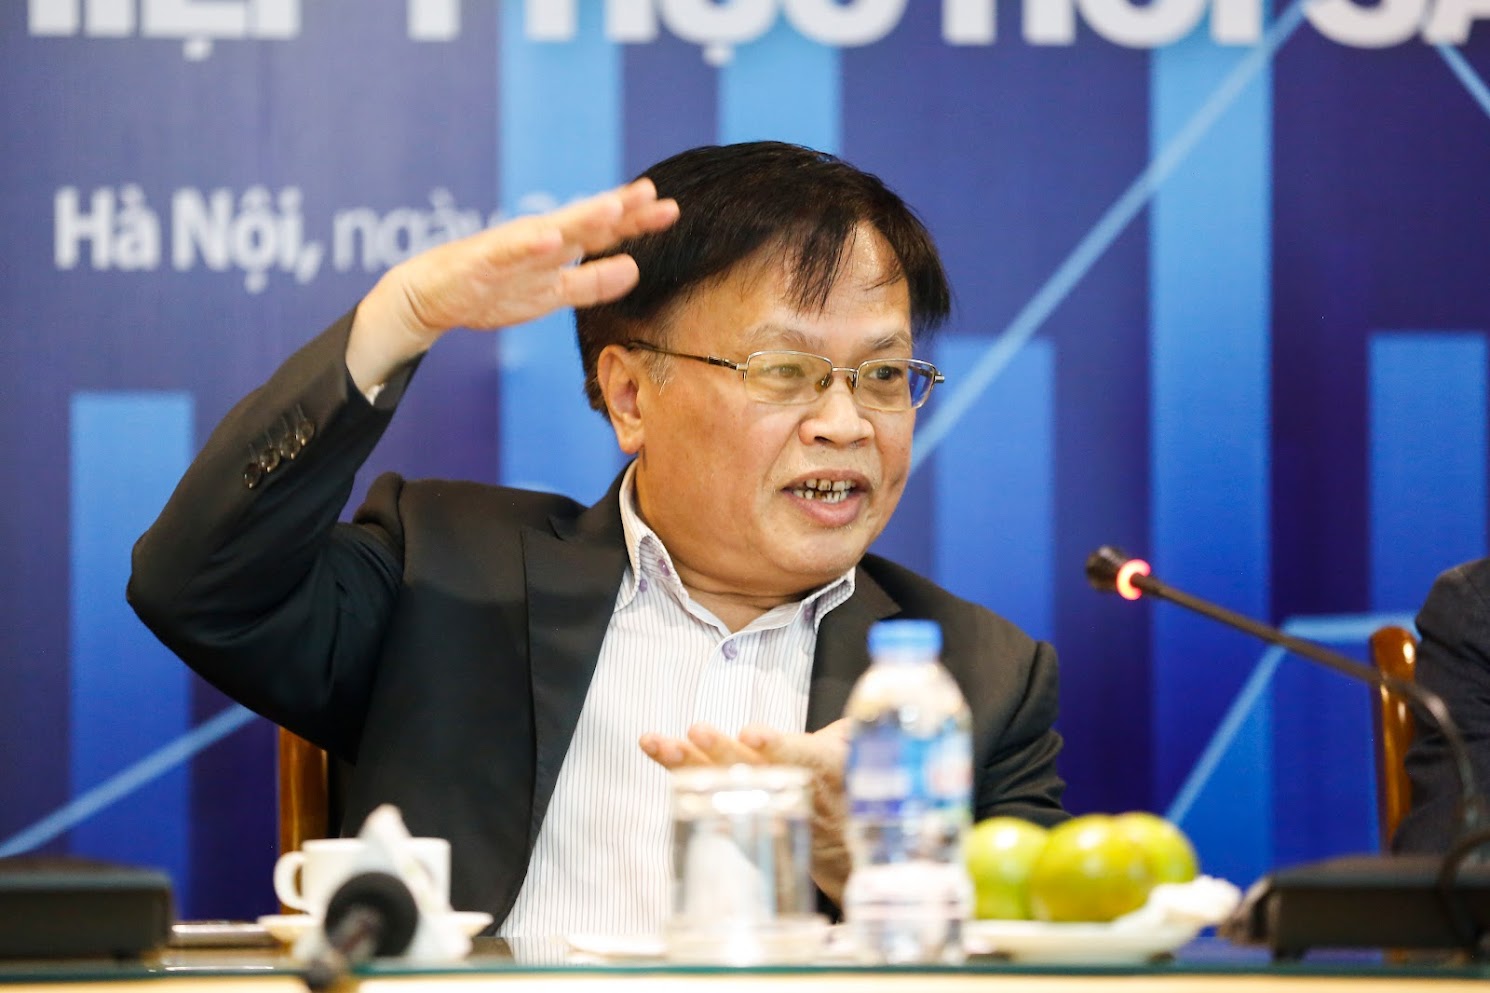 Tiến sĩ Nguyễn Đình Cung: Để doanh nghiệp phục hồi, cần chấp nhận sai sót để đạt mục tiêu - Ảnh 1.